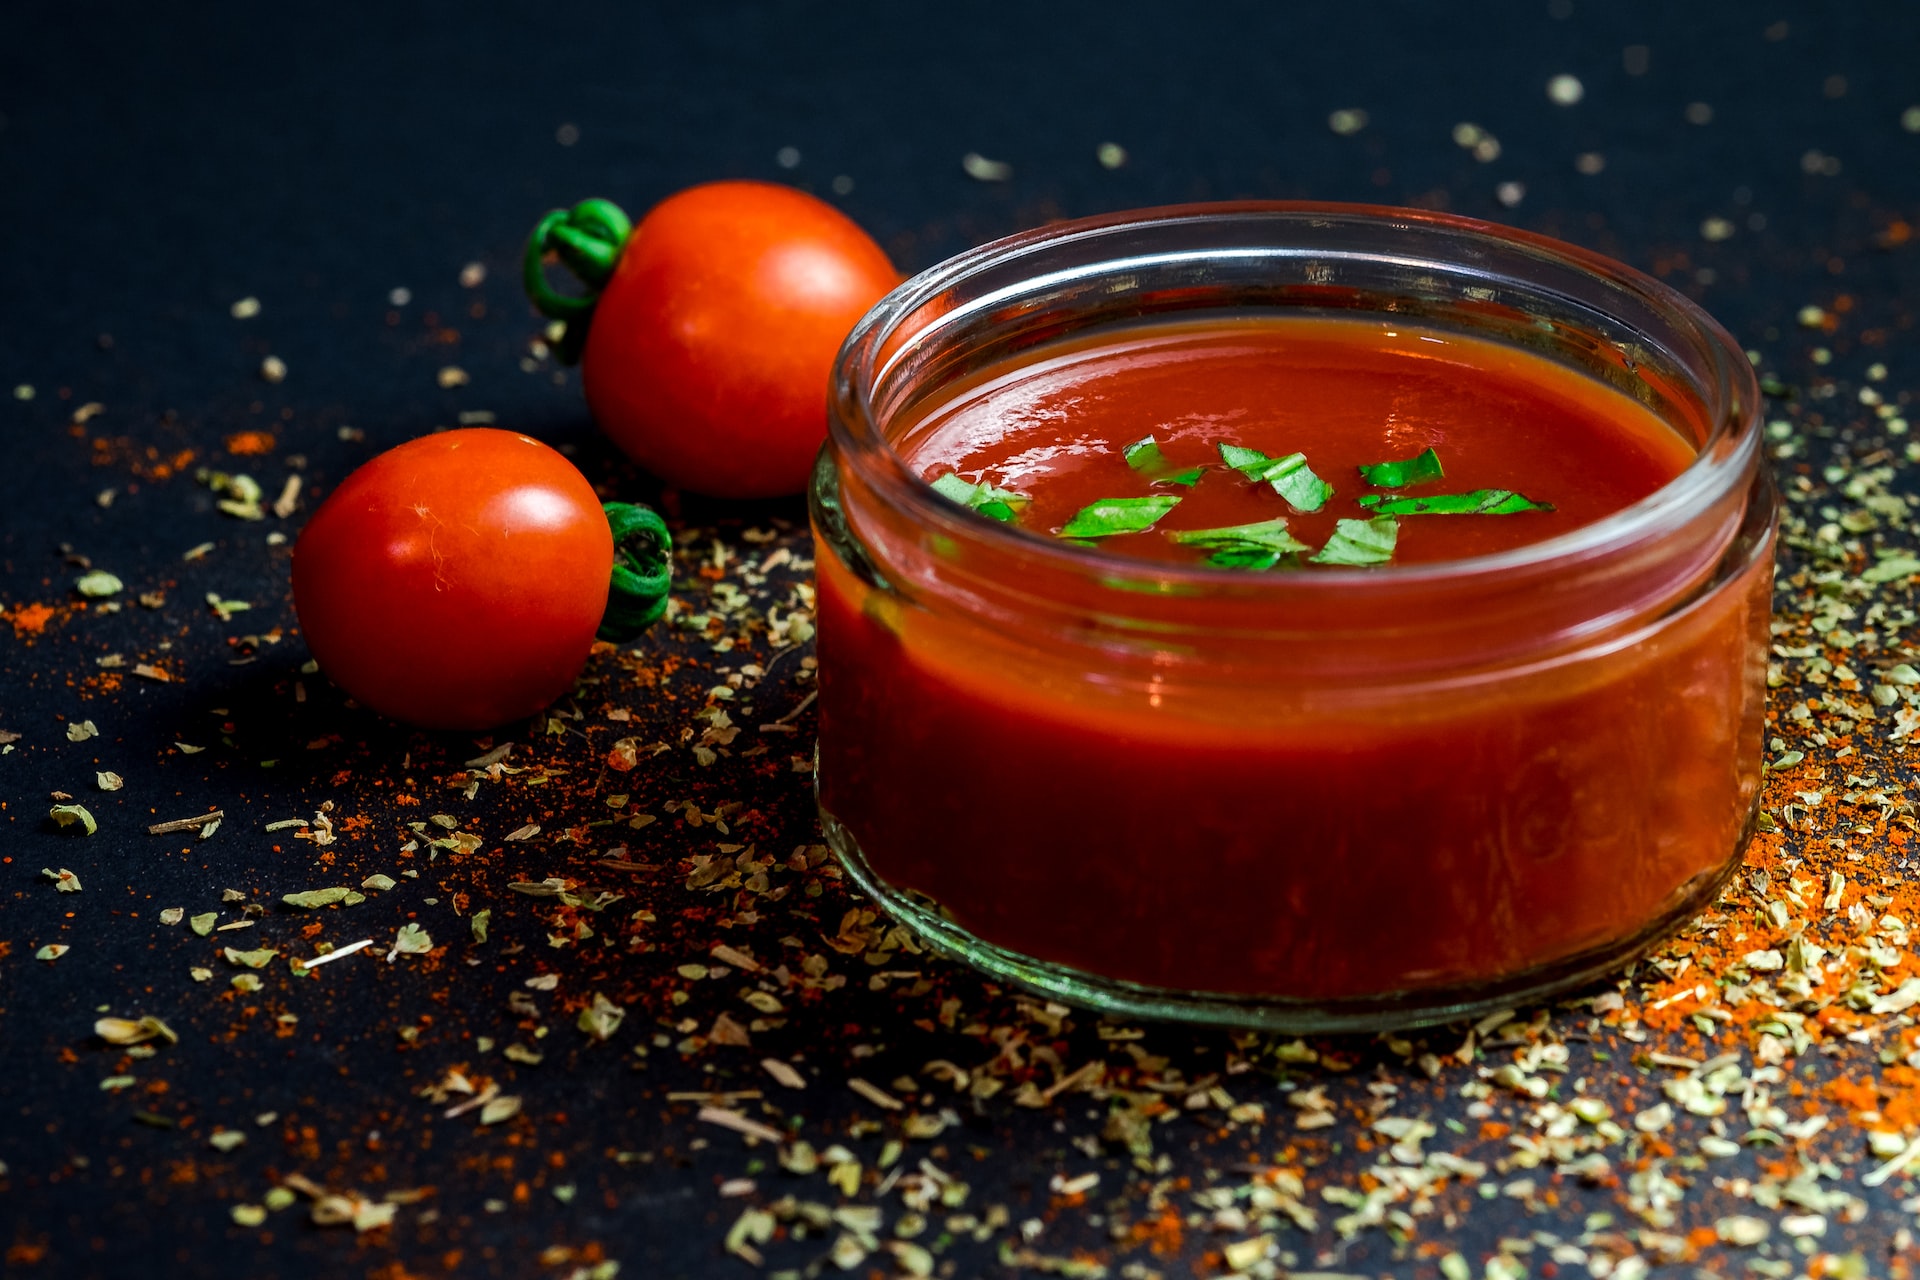 How to make your own tomato passata?